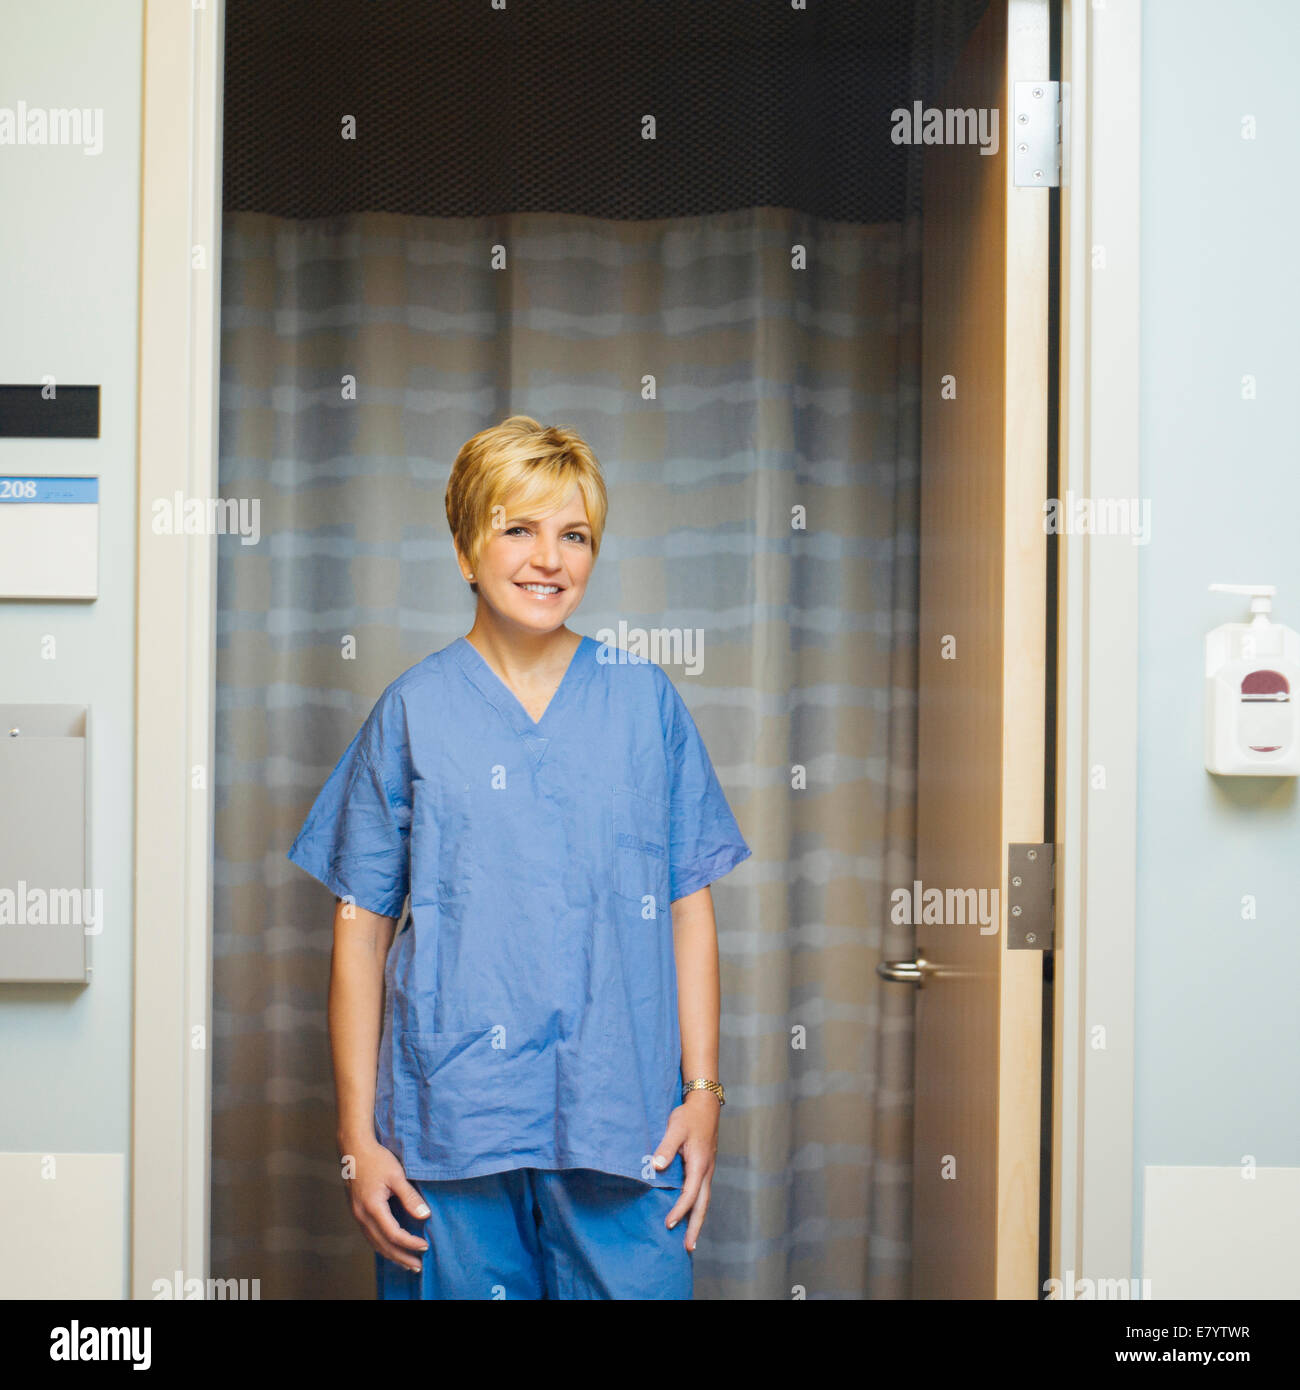 Doctor in scrubs standing in doorway, smiling Stock Photo